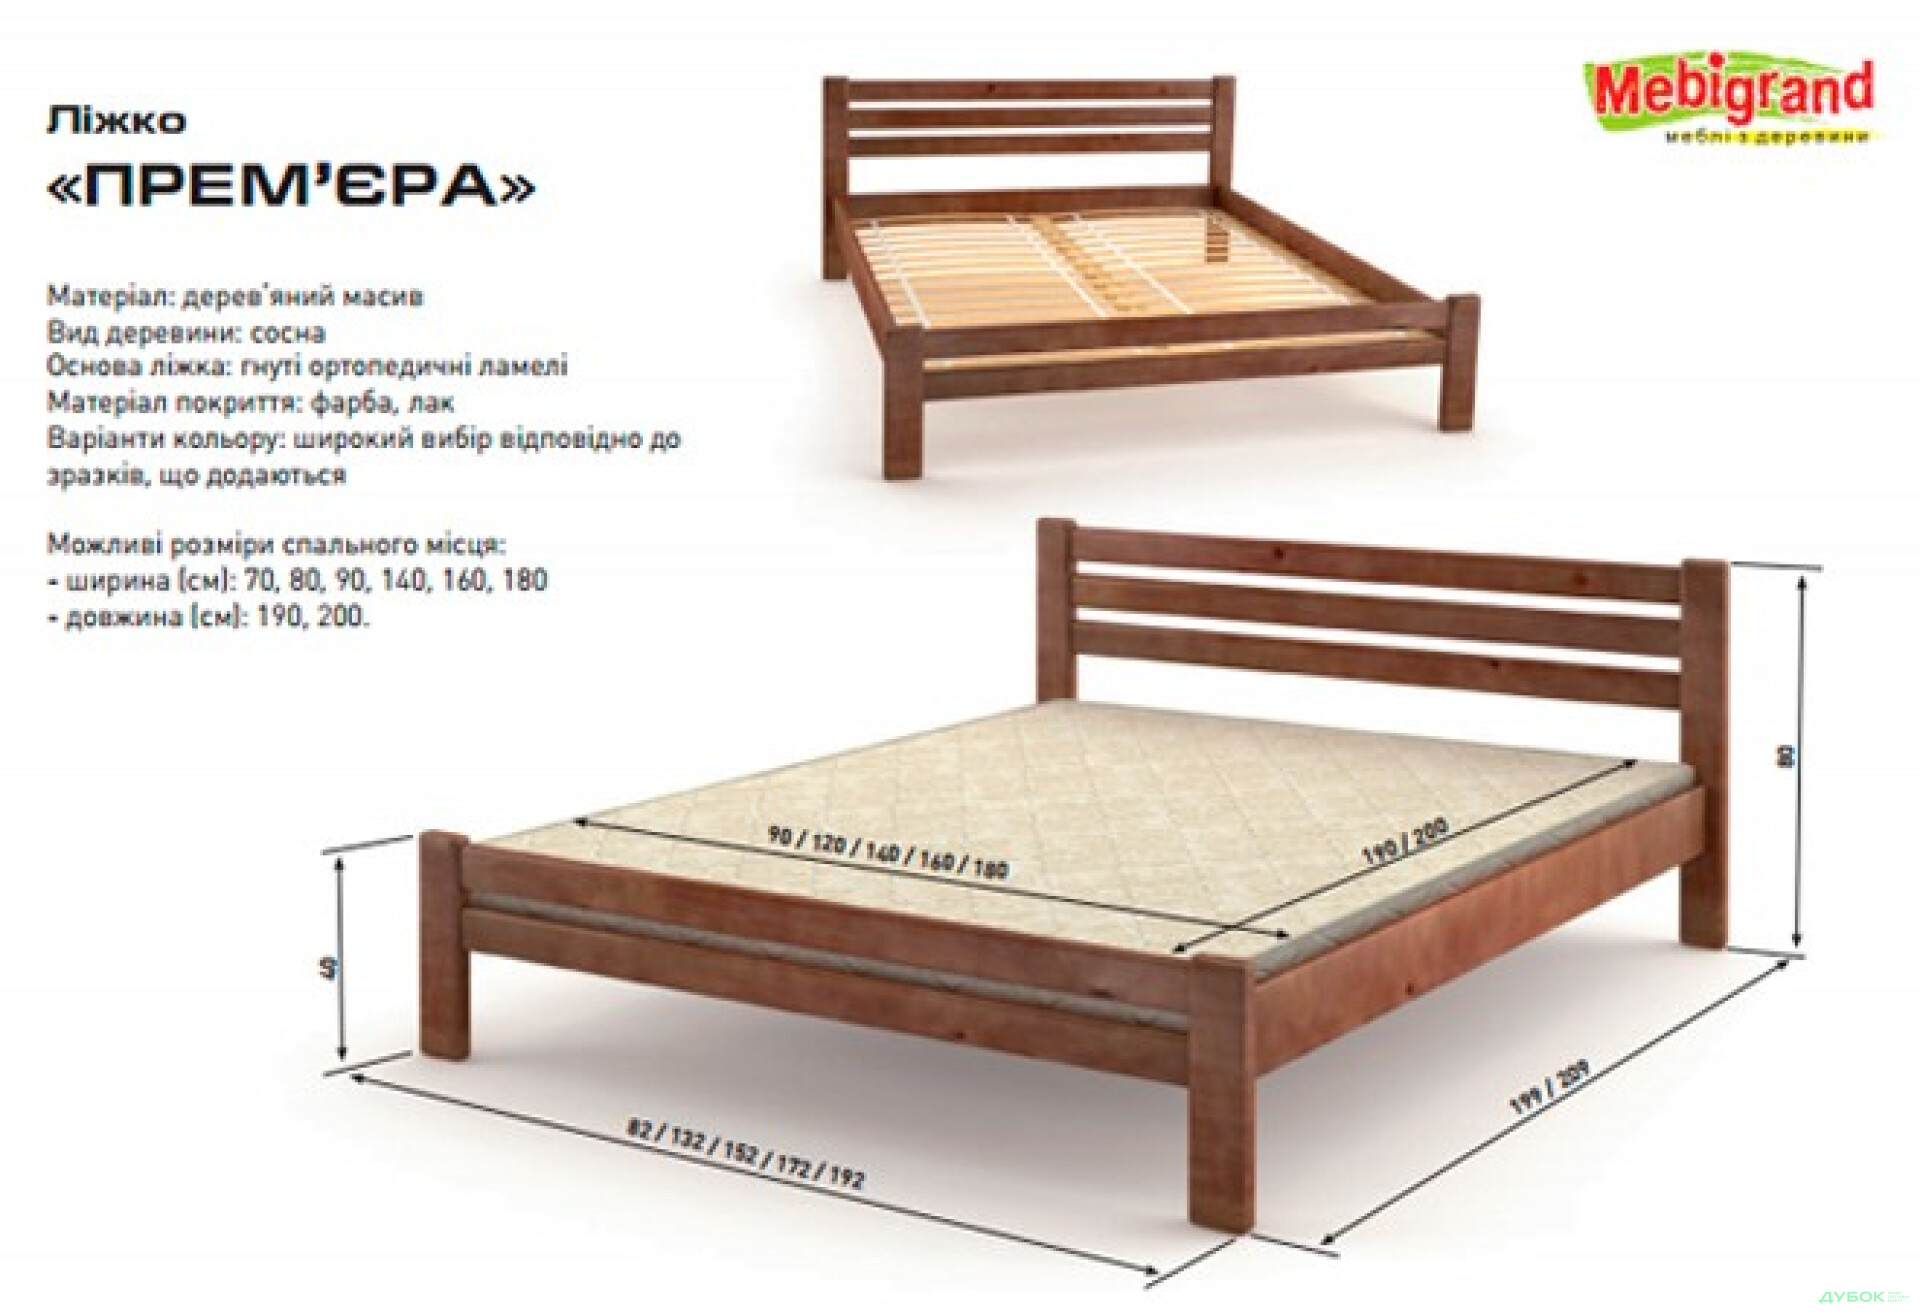 Фото 2 - Кровать двуспальная деревяная Премьера 160 Mebigrand